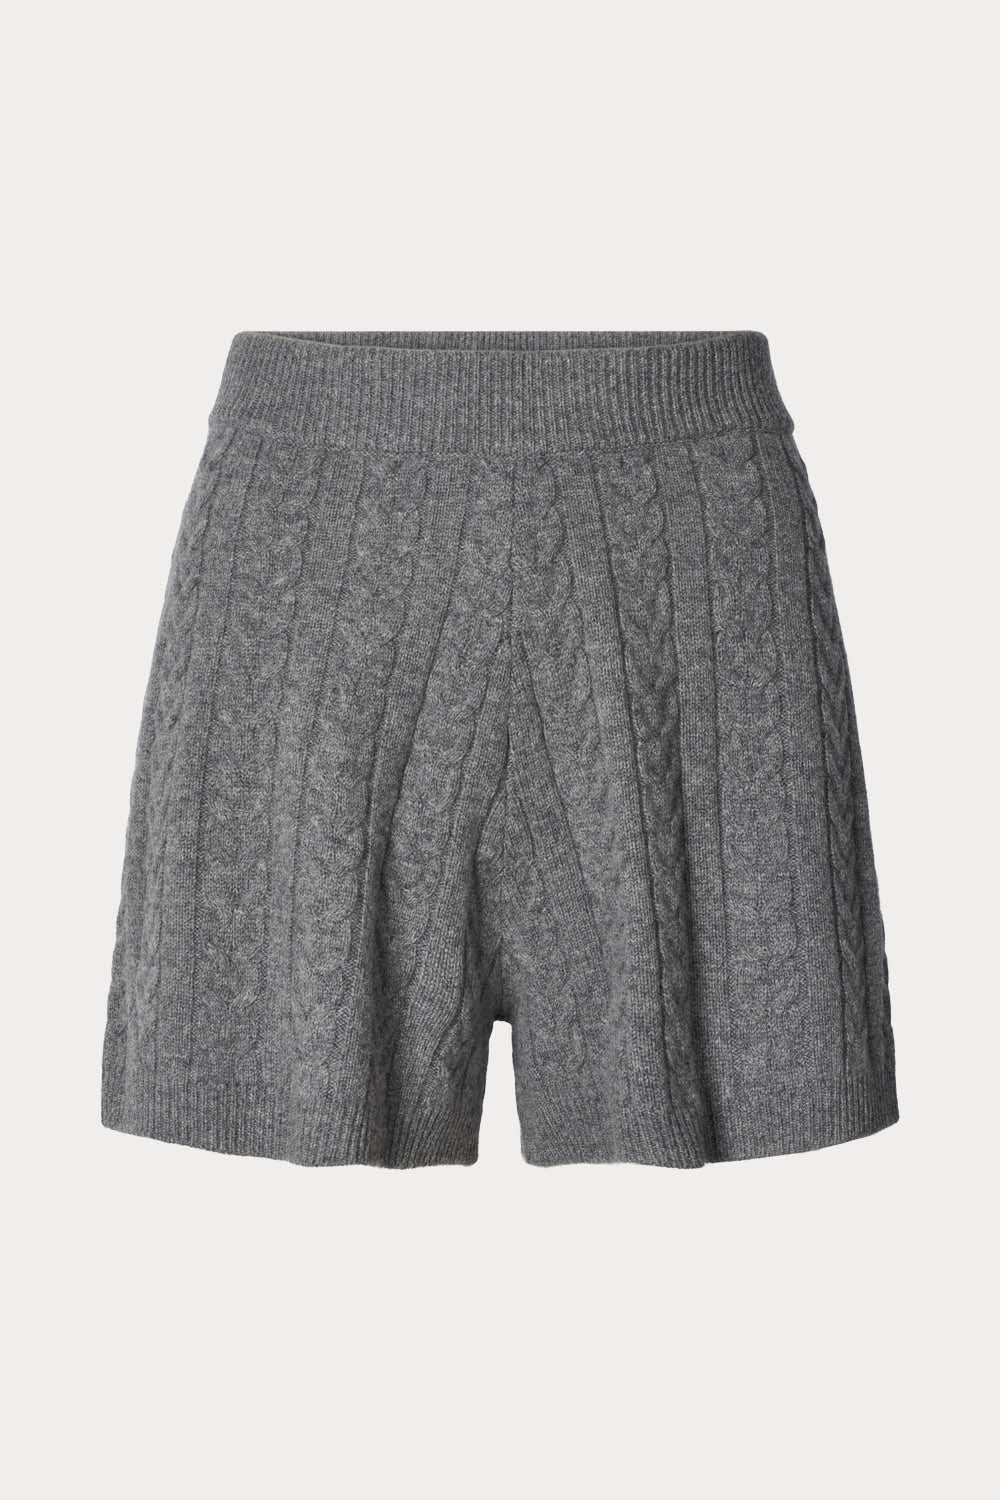 O'TAY Benita Shorts Shorts Cold Grey